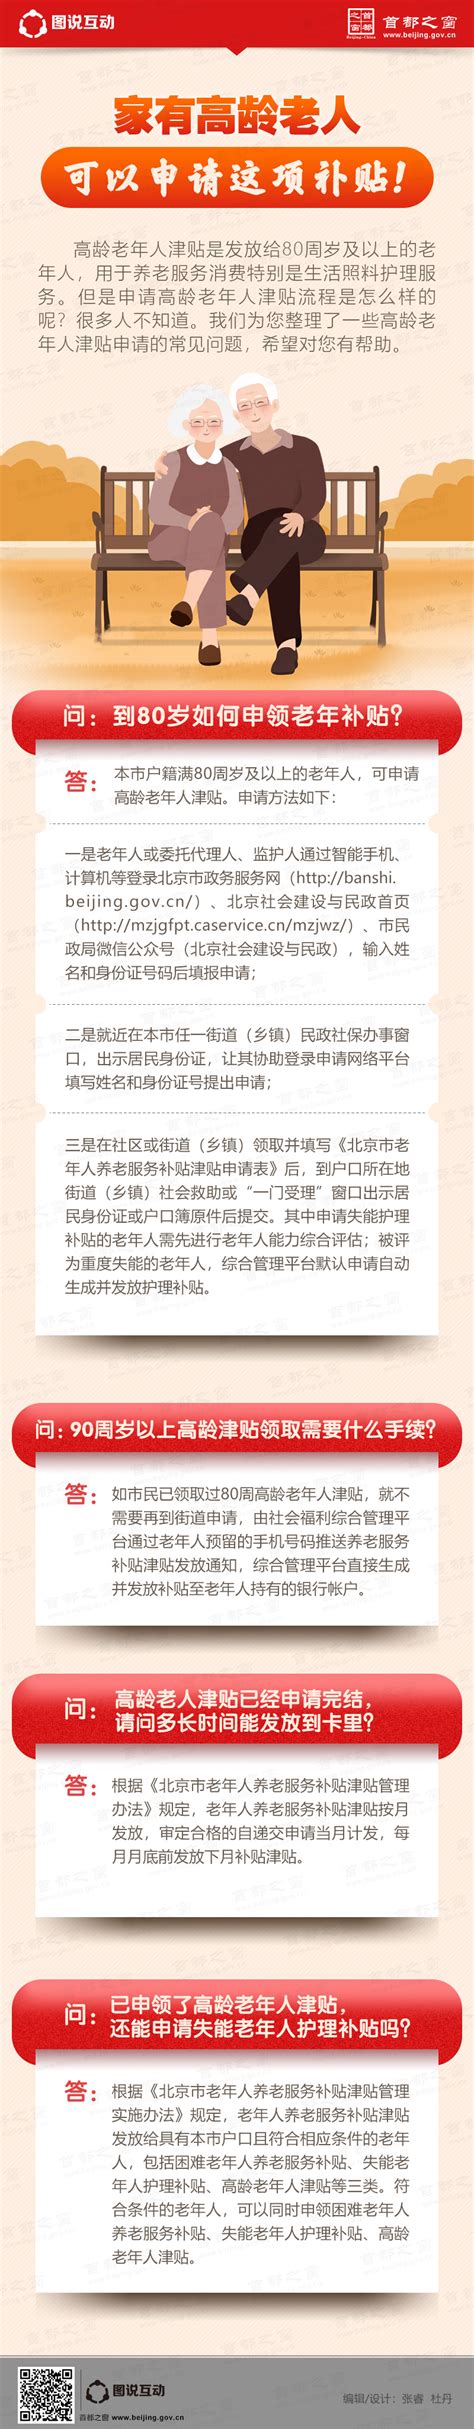 家有高龄老人 可以申请这项补贴！_图说互动_首都之窗_北京市人民政府门户网站